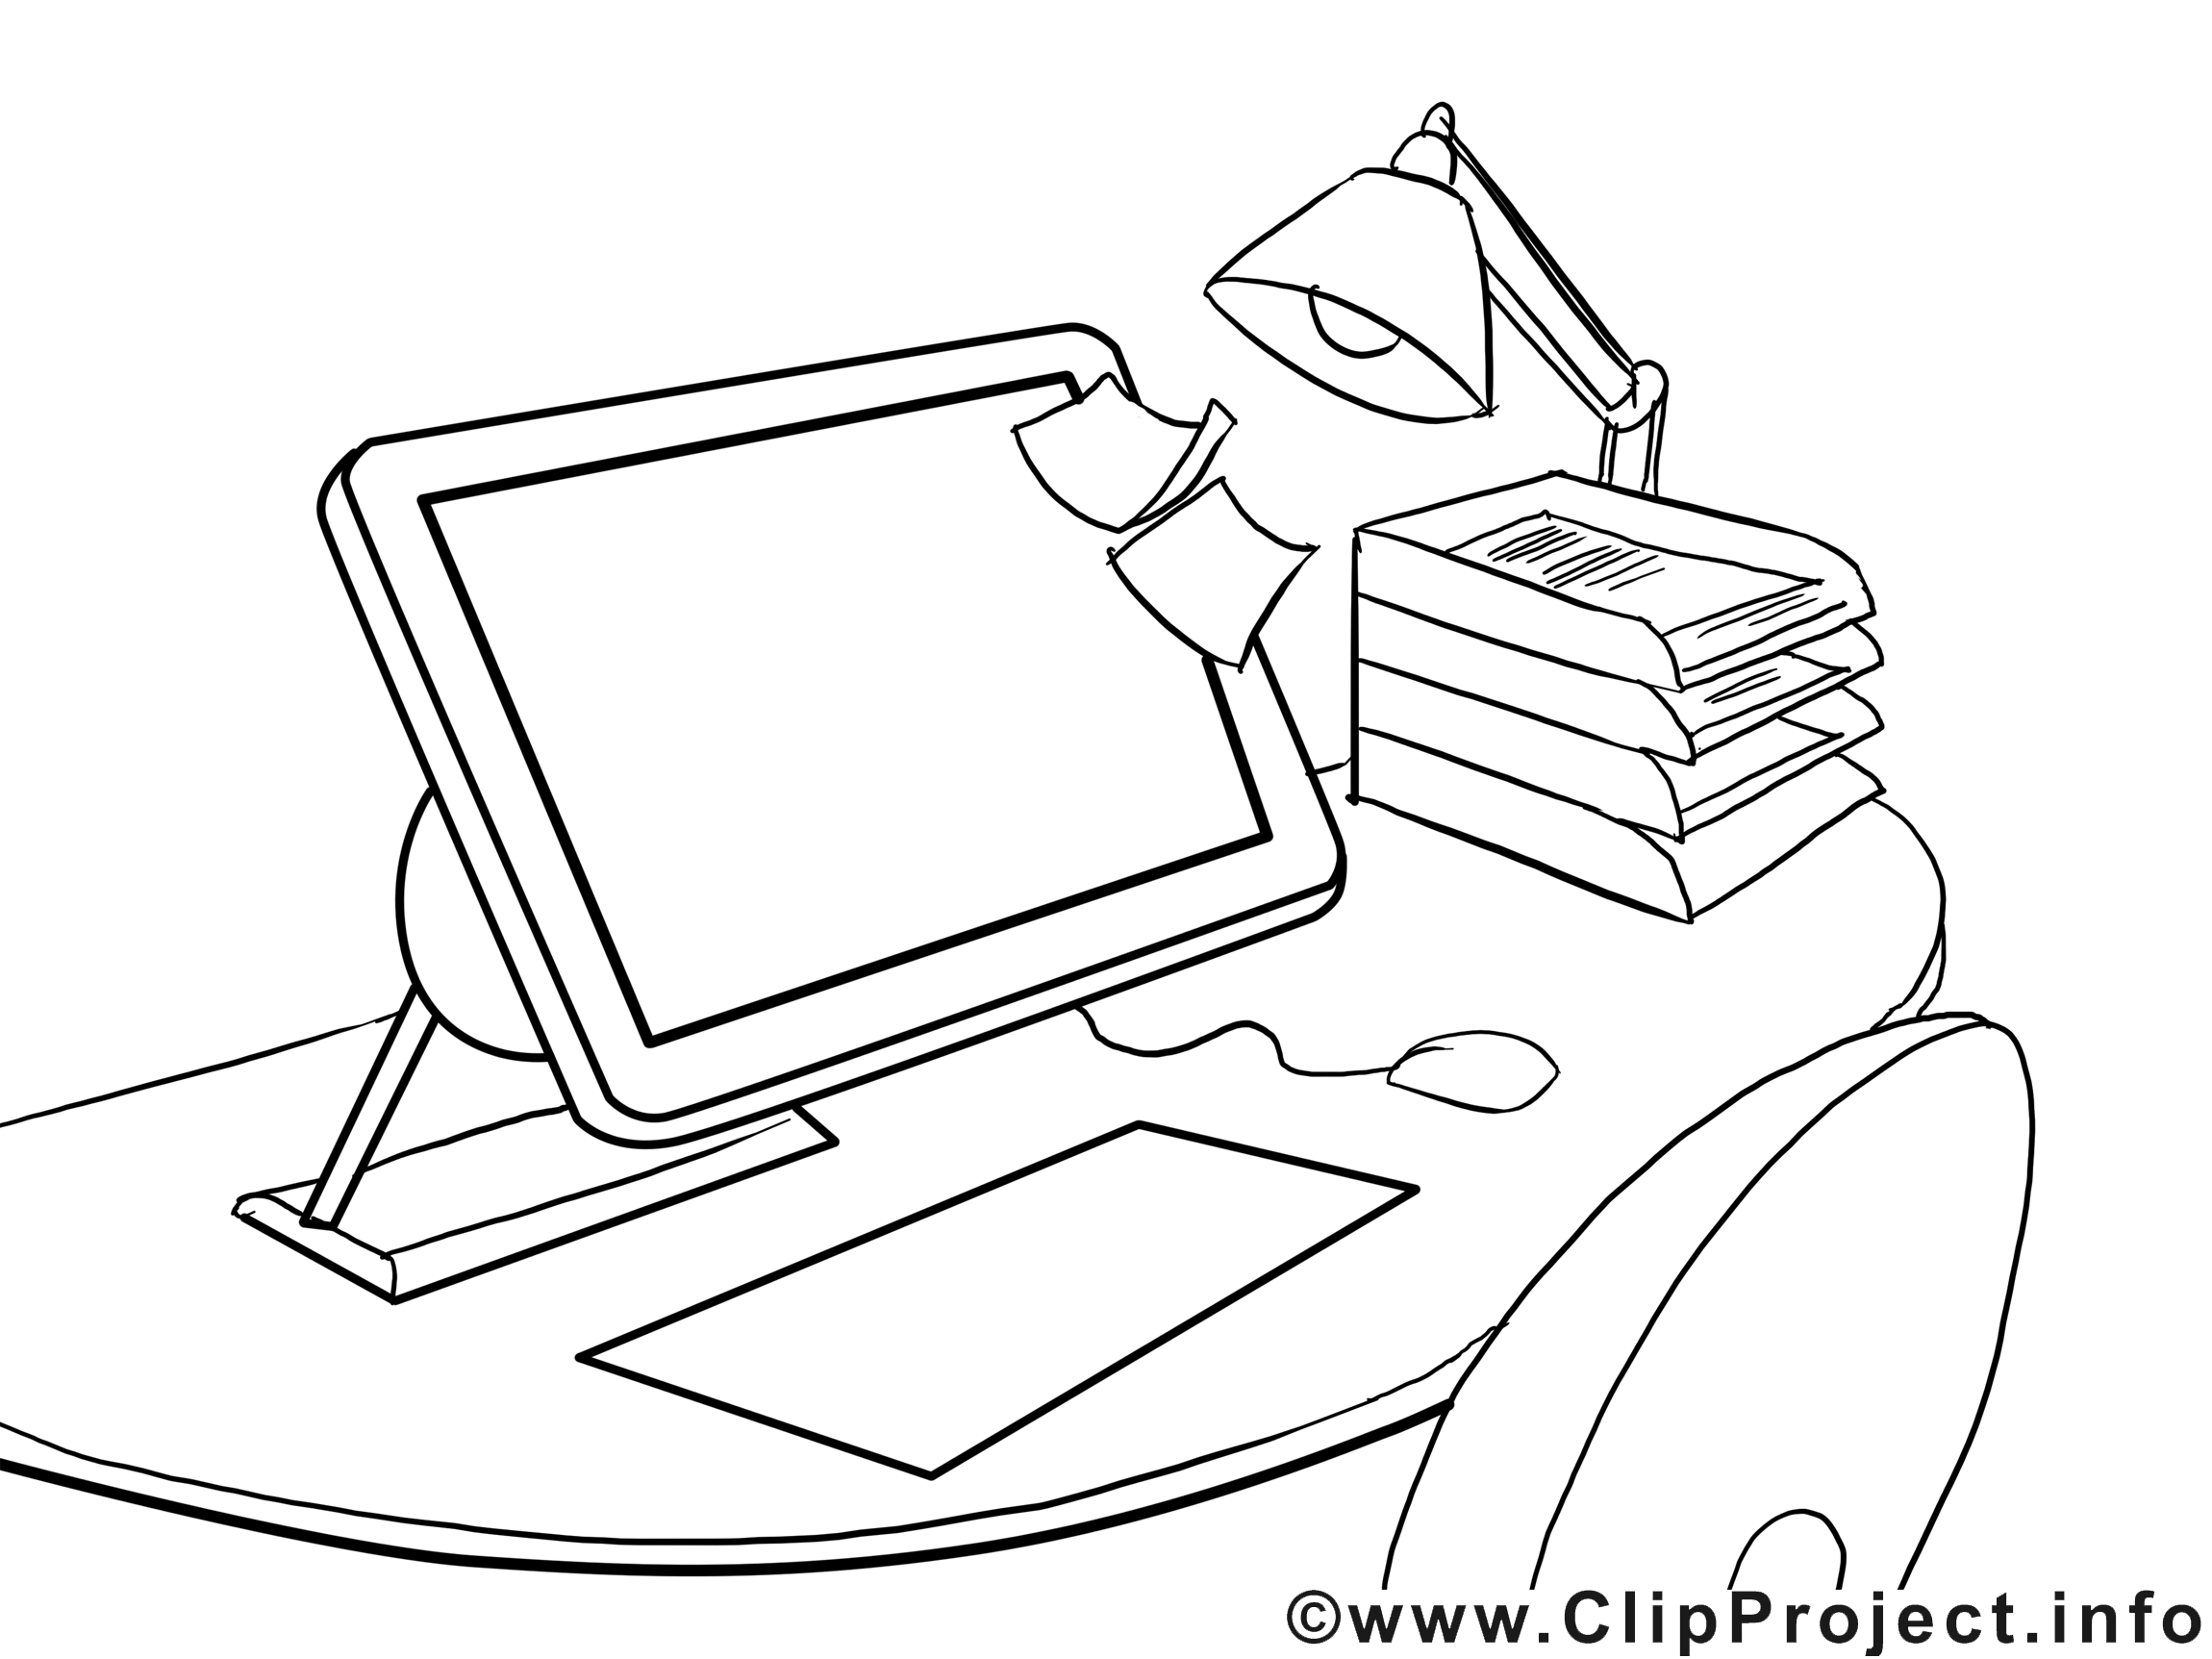 Clip art ordinateur – Économie image à colorier